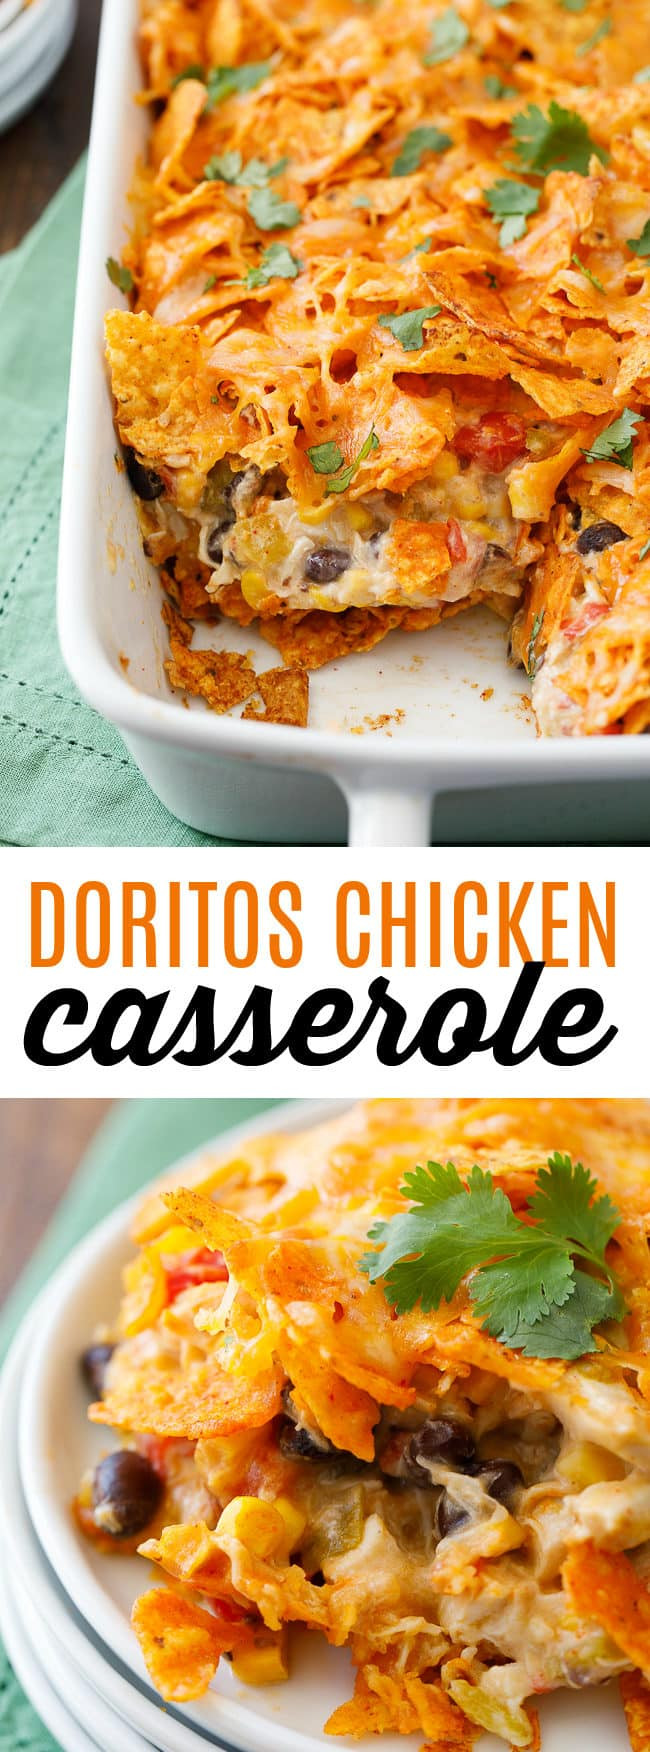 Dorito Casserole With Chicken
 Doritos Chicken Casserole Recipe